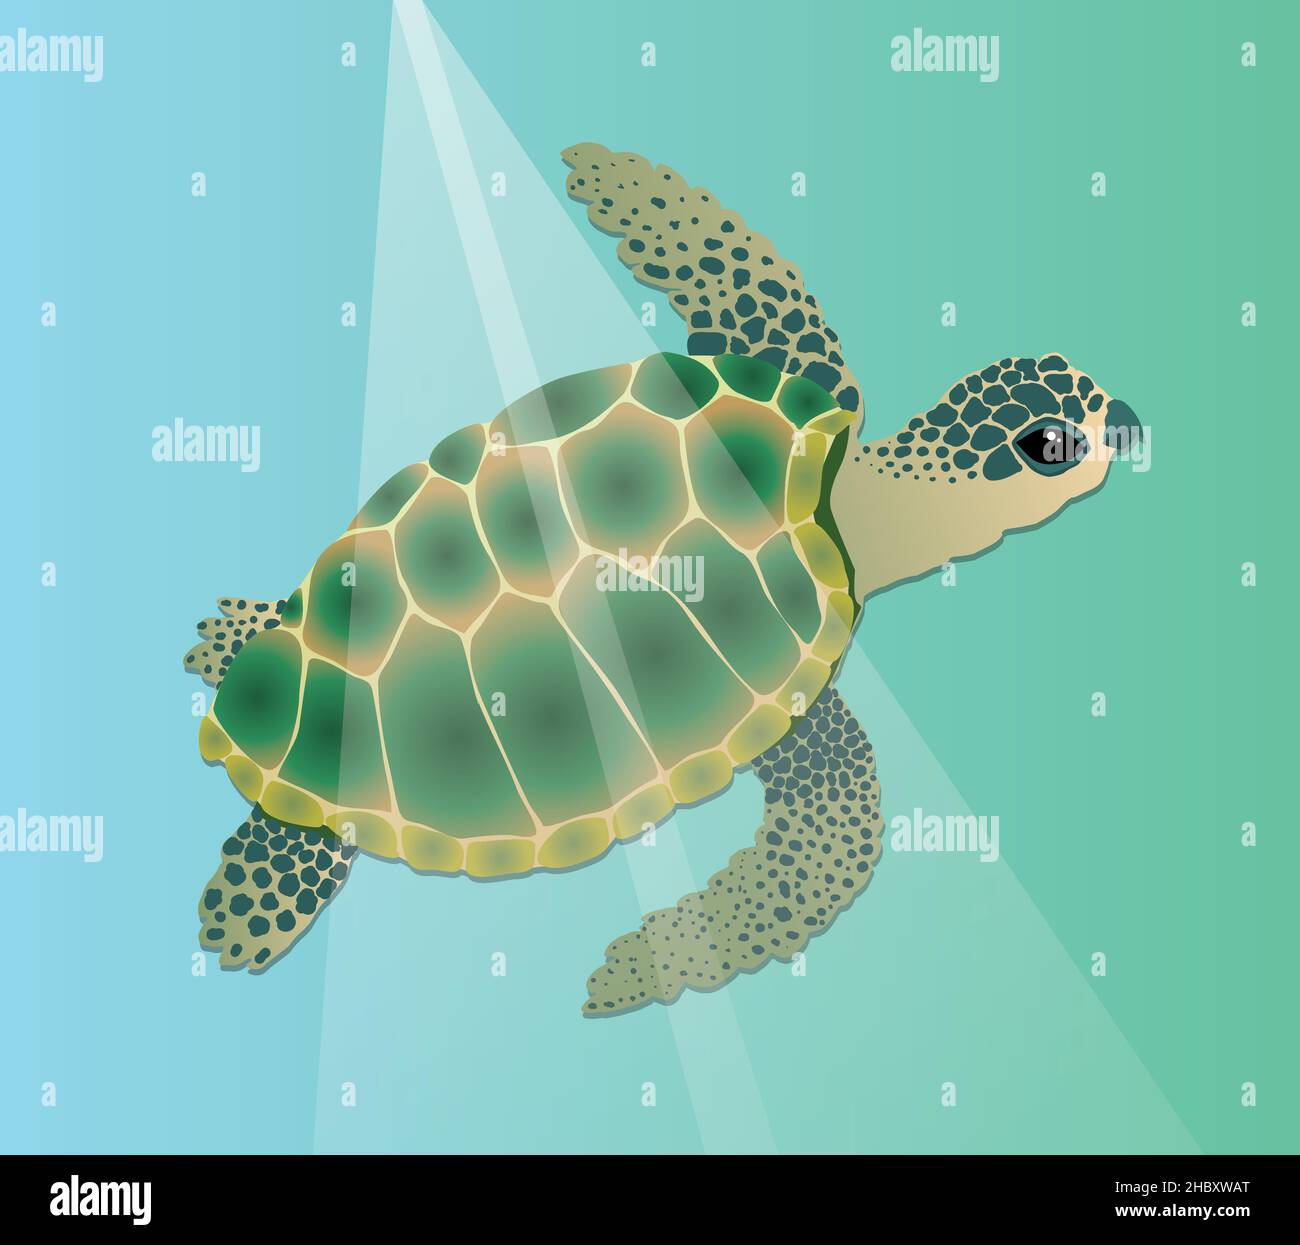 Illustration vectorielle d'une tortue de mer nageant sous l'eau.Le reptile est vert avec une couleur bleue et il a des taches dans une teinte bleu foncé vert sur son h Illustration de Vecteur